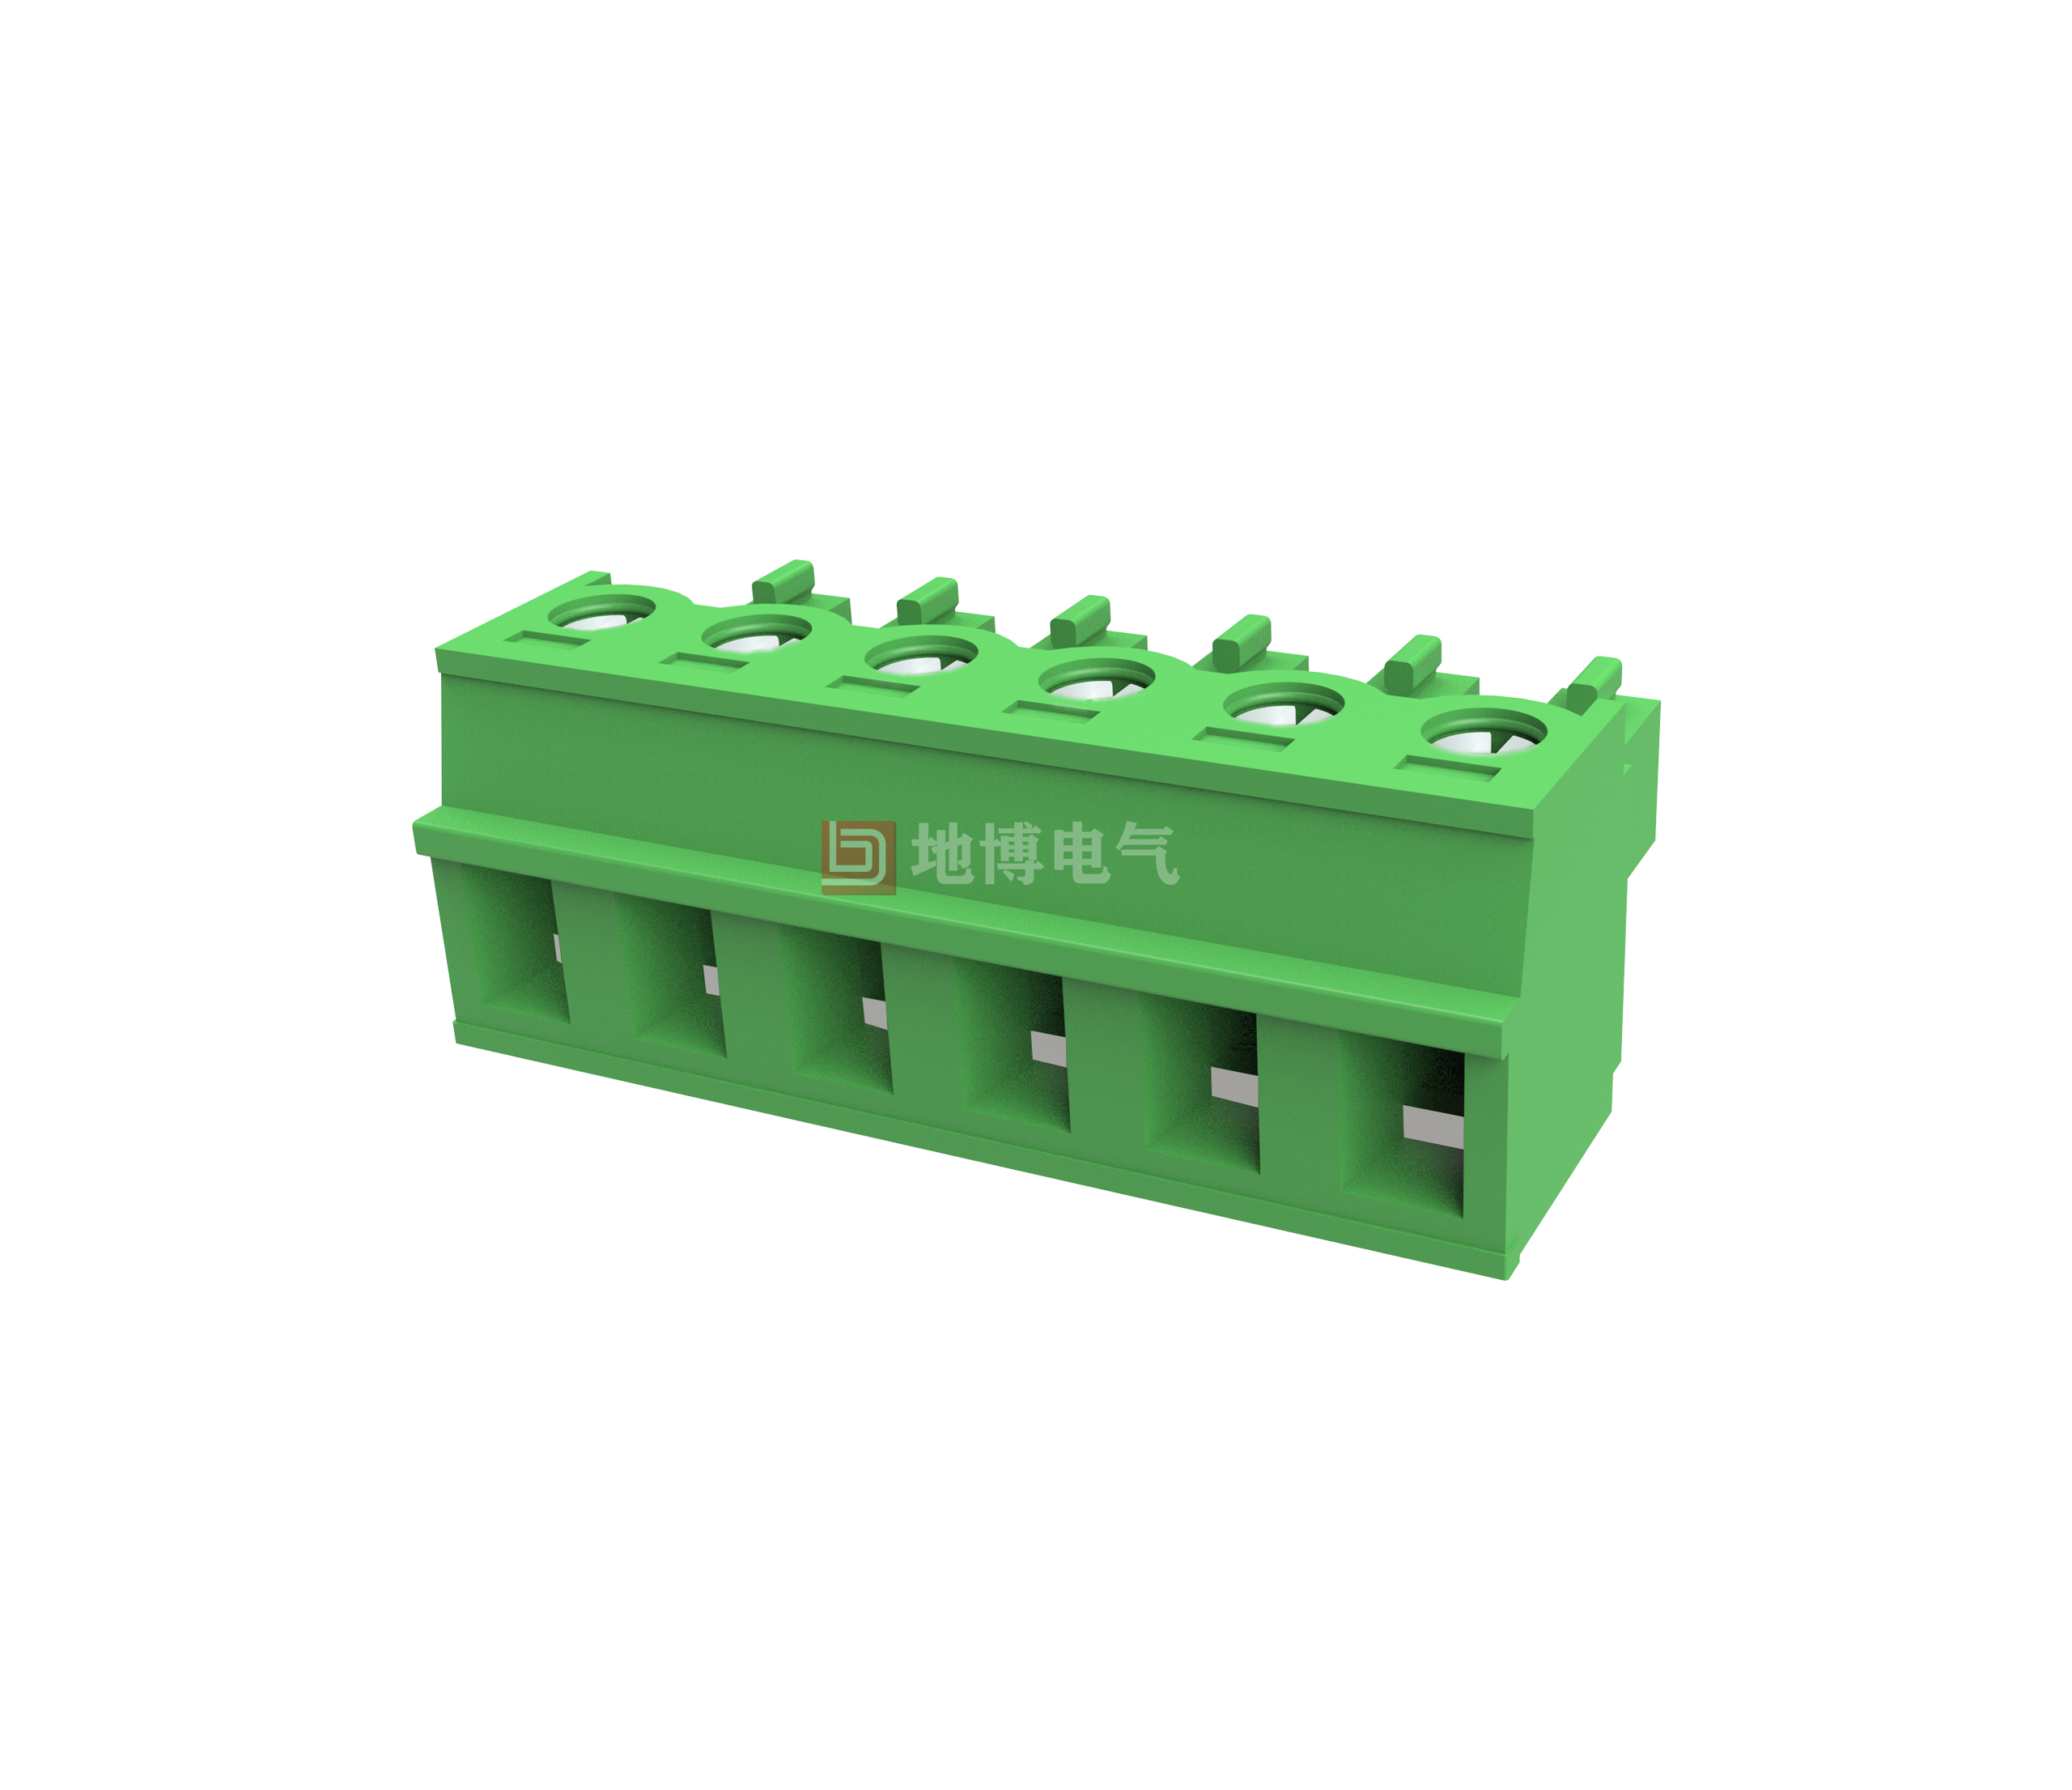 PCB plug-in connector DB1EK-5.08